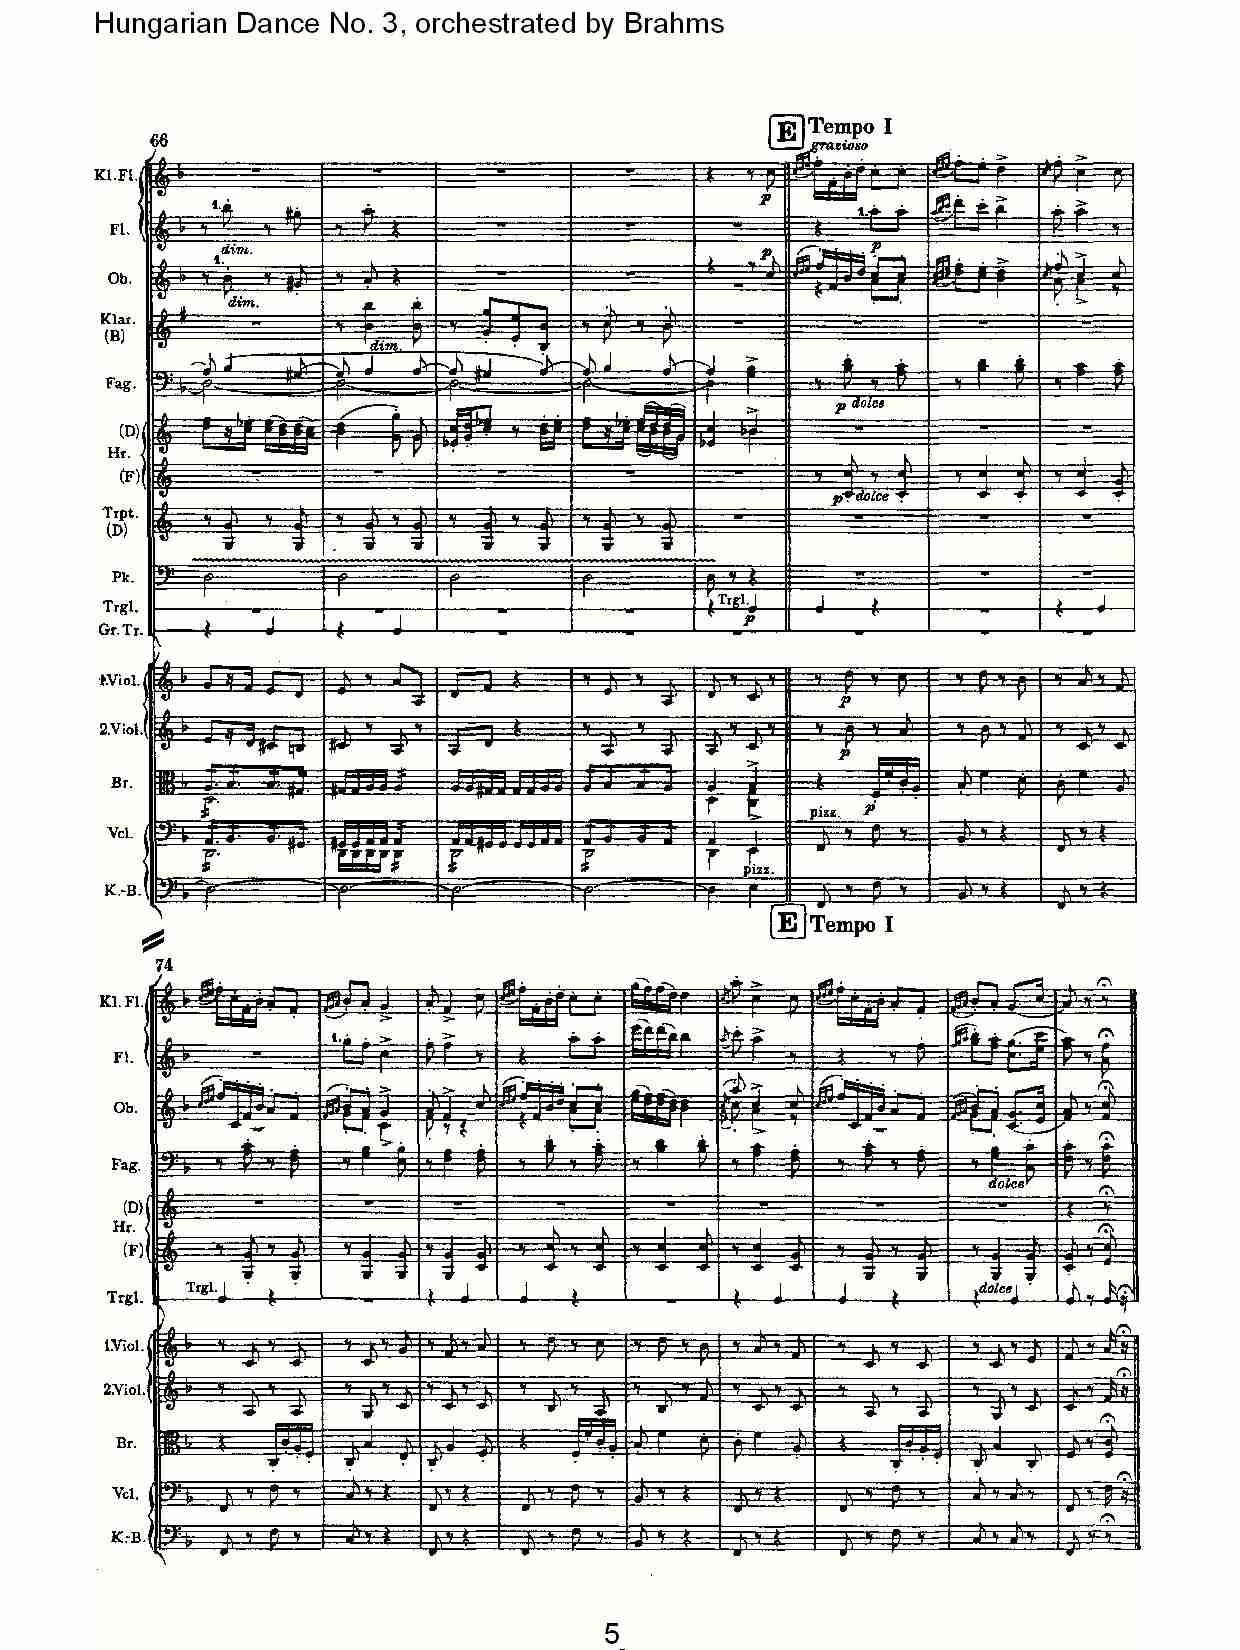 第三匈牙利舞曲 勃拉姆斯管弦乐曲式总谱（图5）